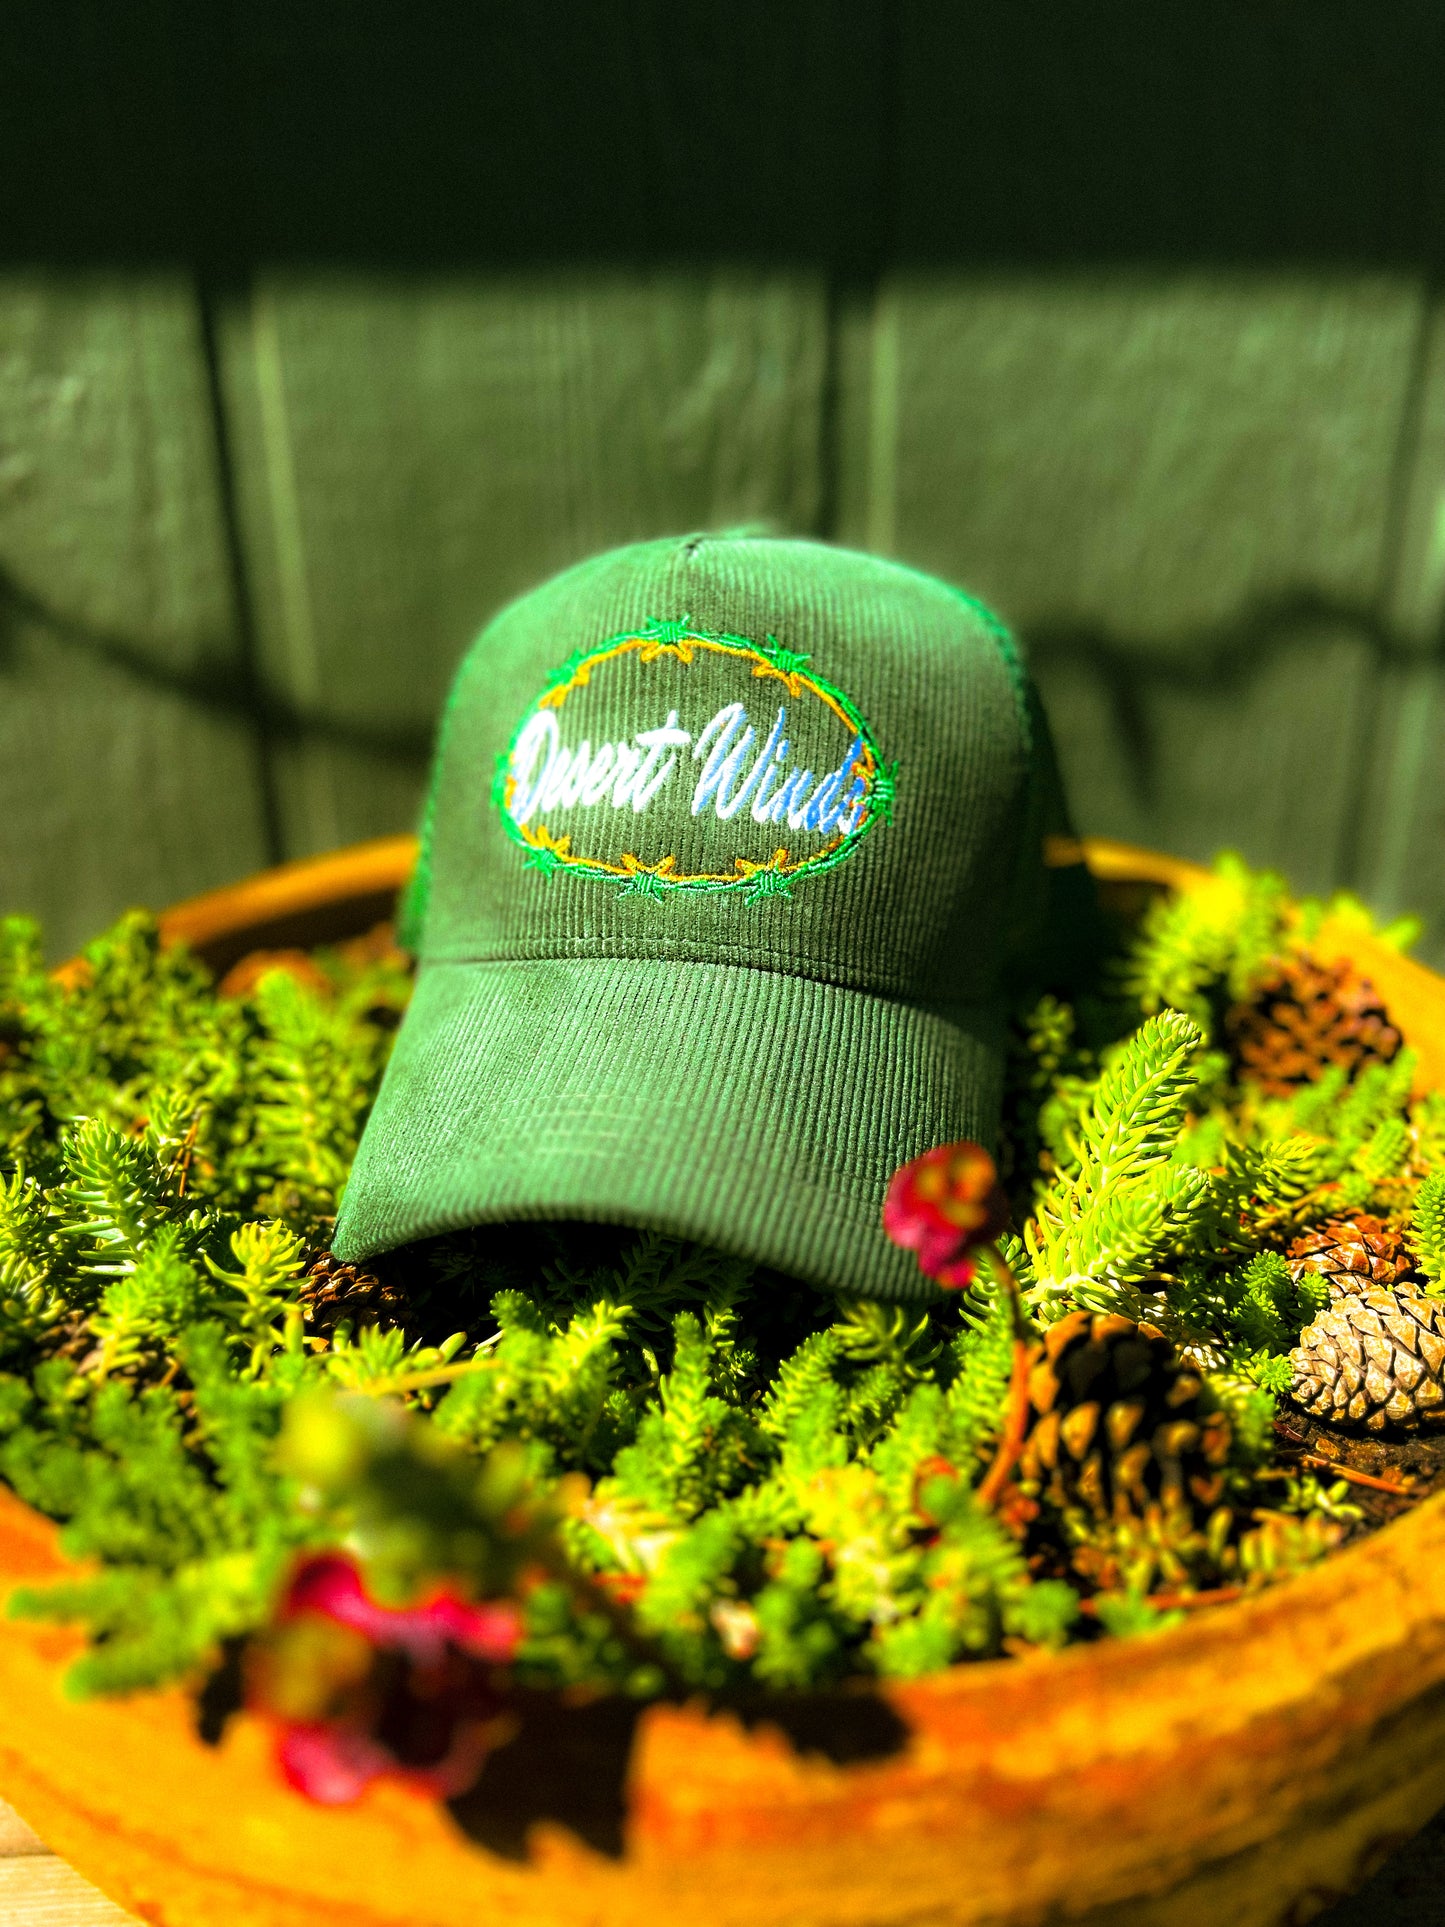 Barbed Corduroy Trucker Hat (Green)